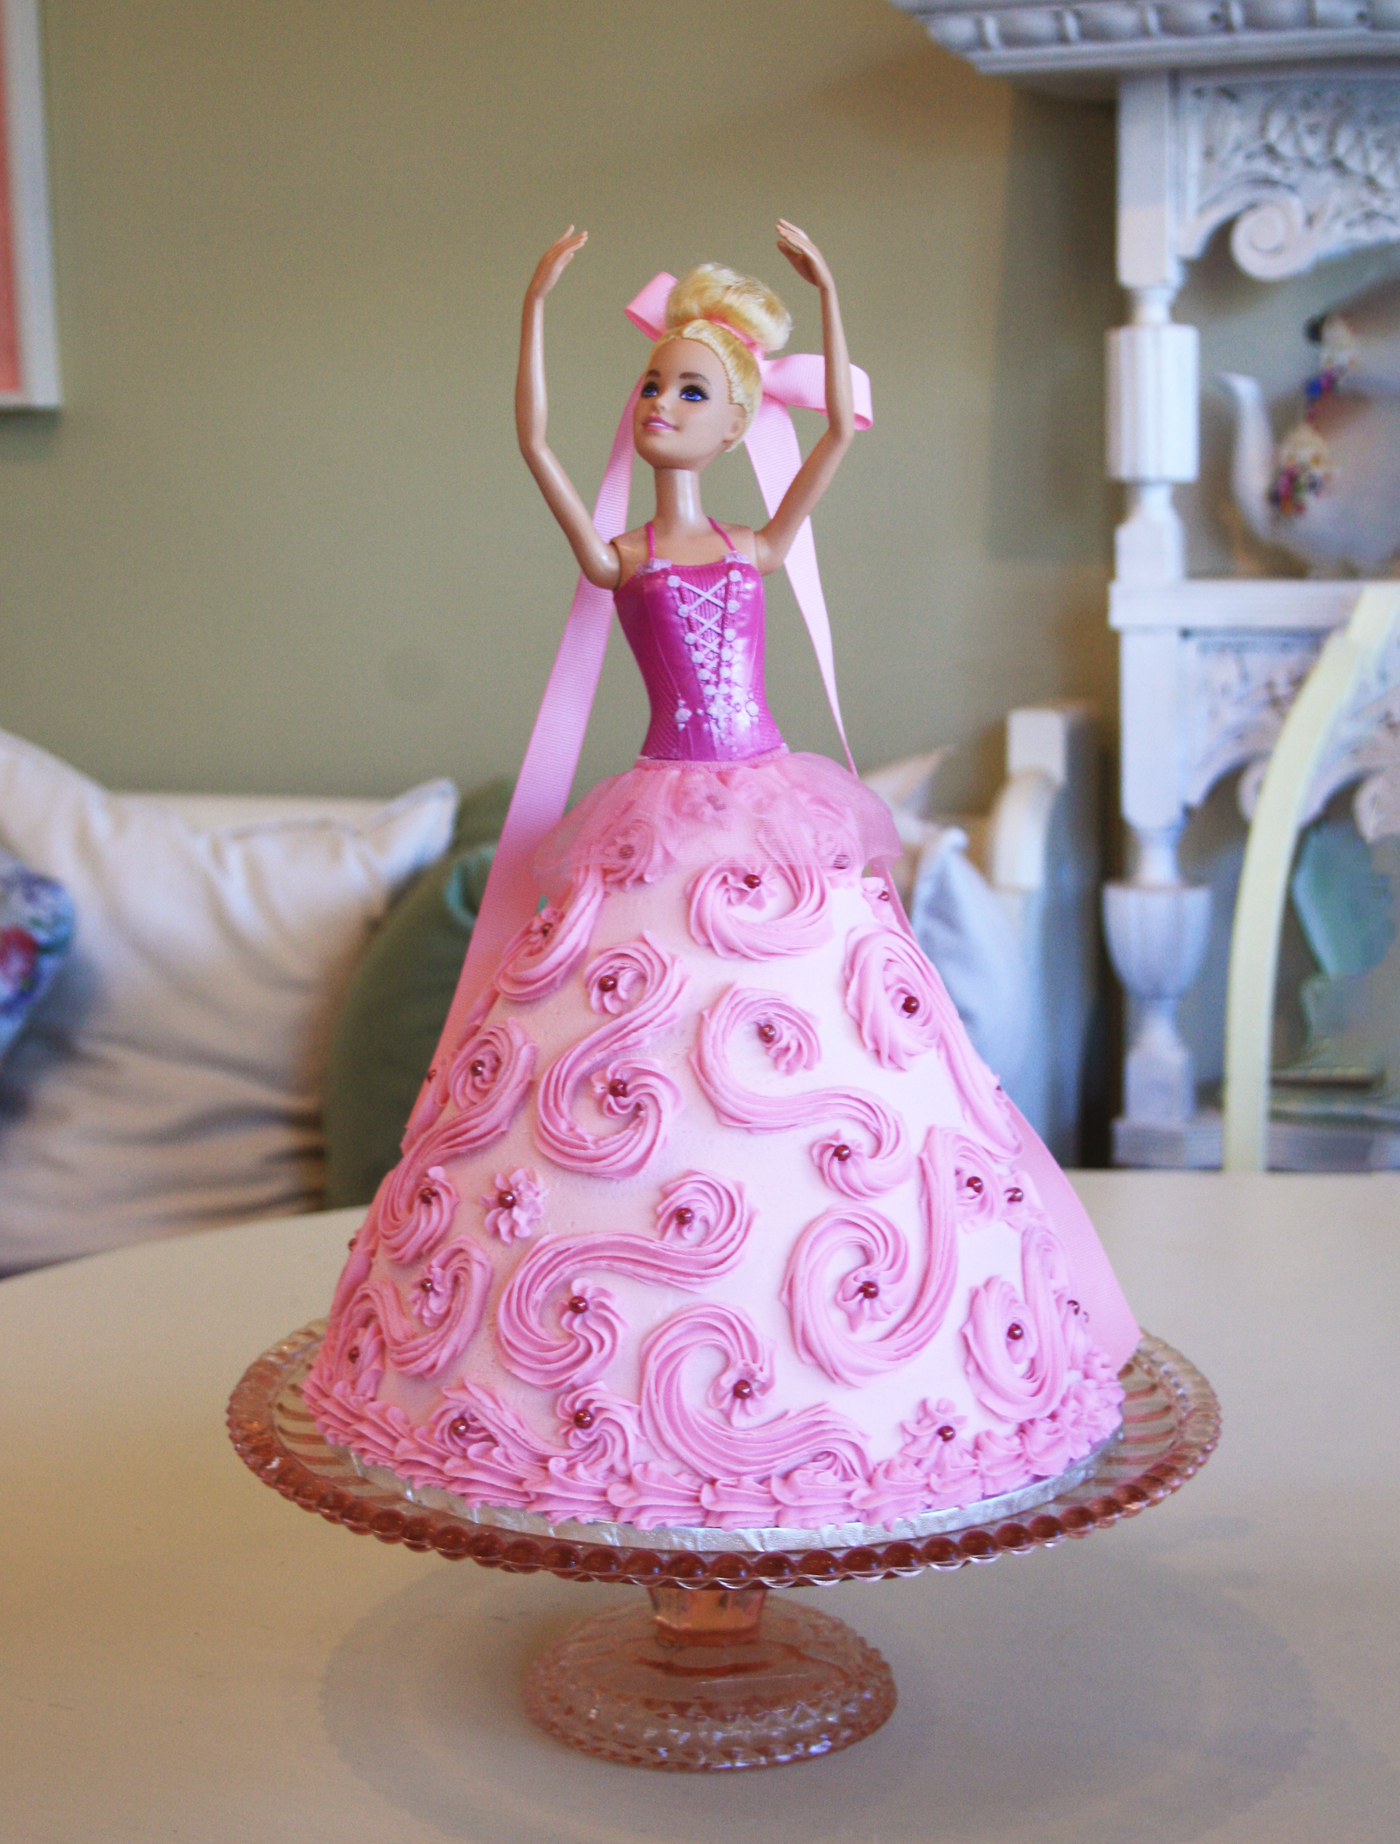 Barbie Doll cake | Eggless doll cake recipe | बिना केक मोल्ड के बनाए डॉल  केक | Eggless cake - YouTube